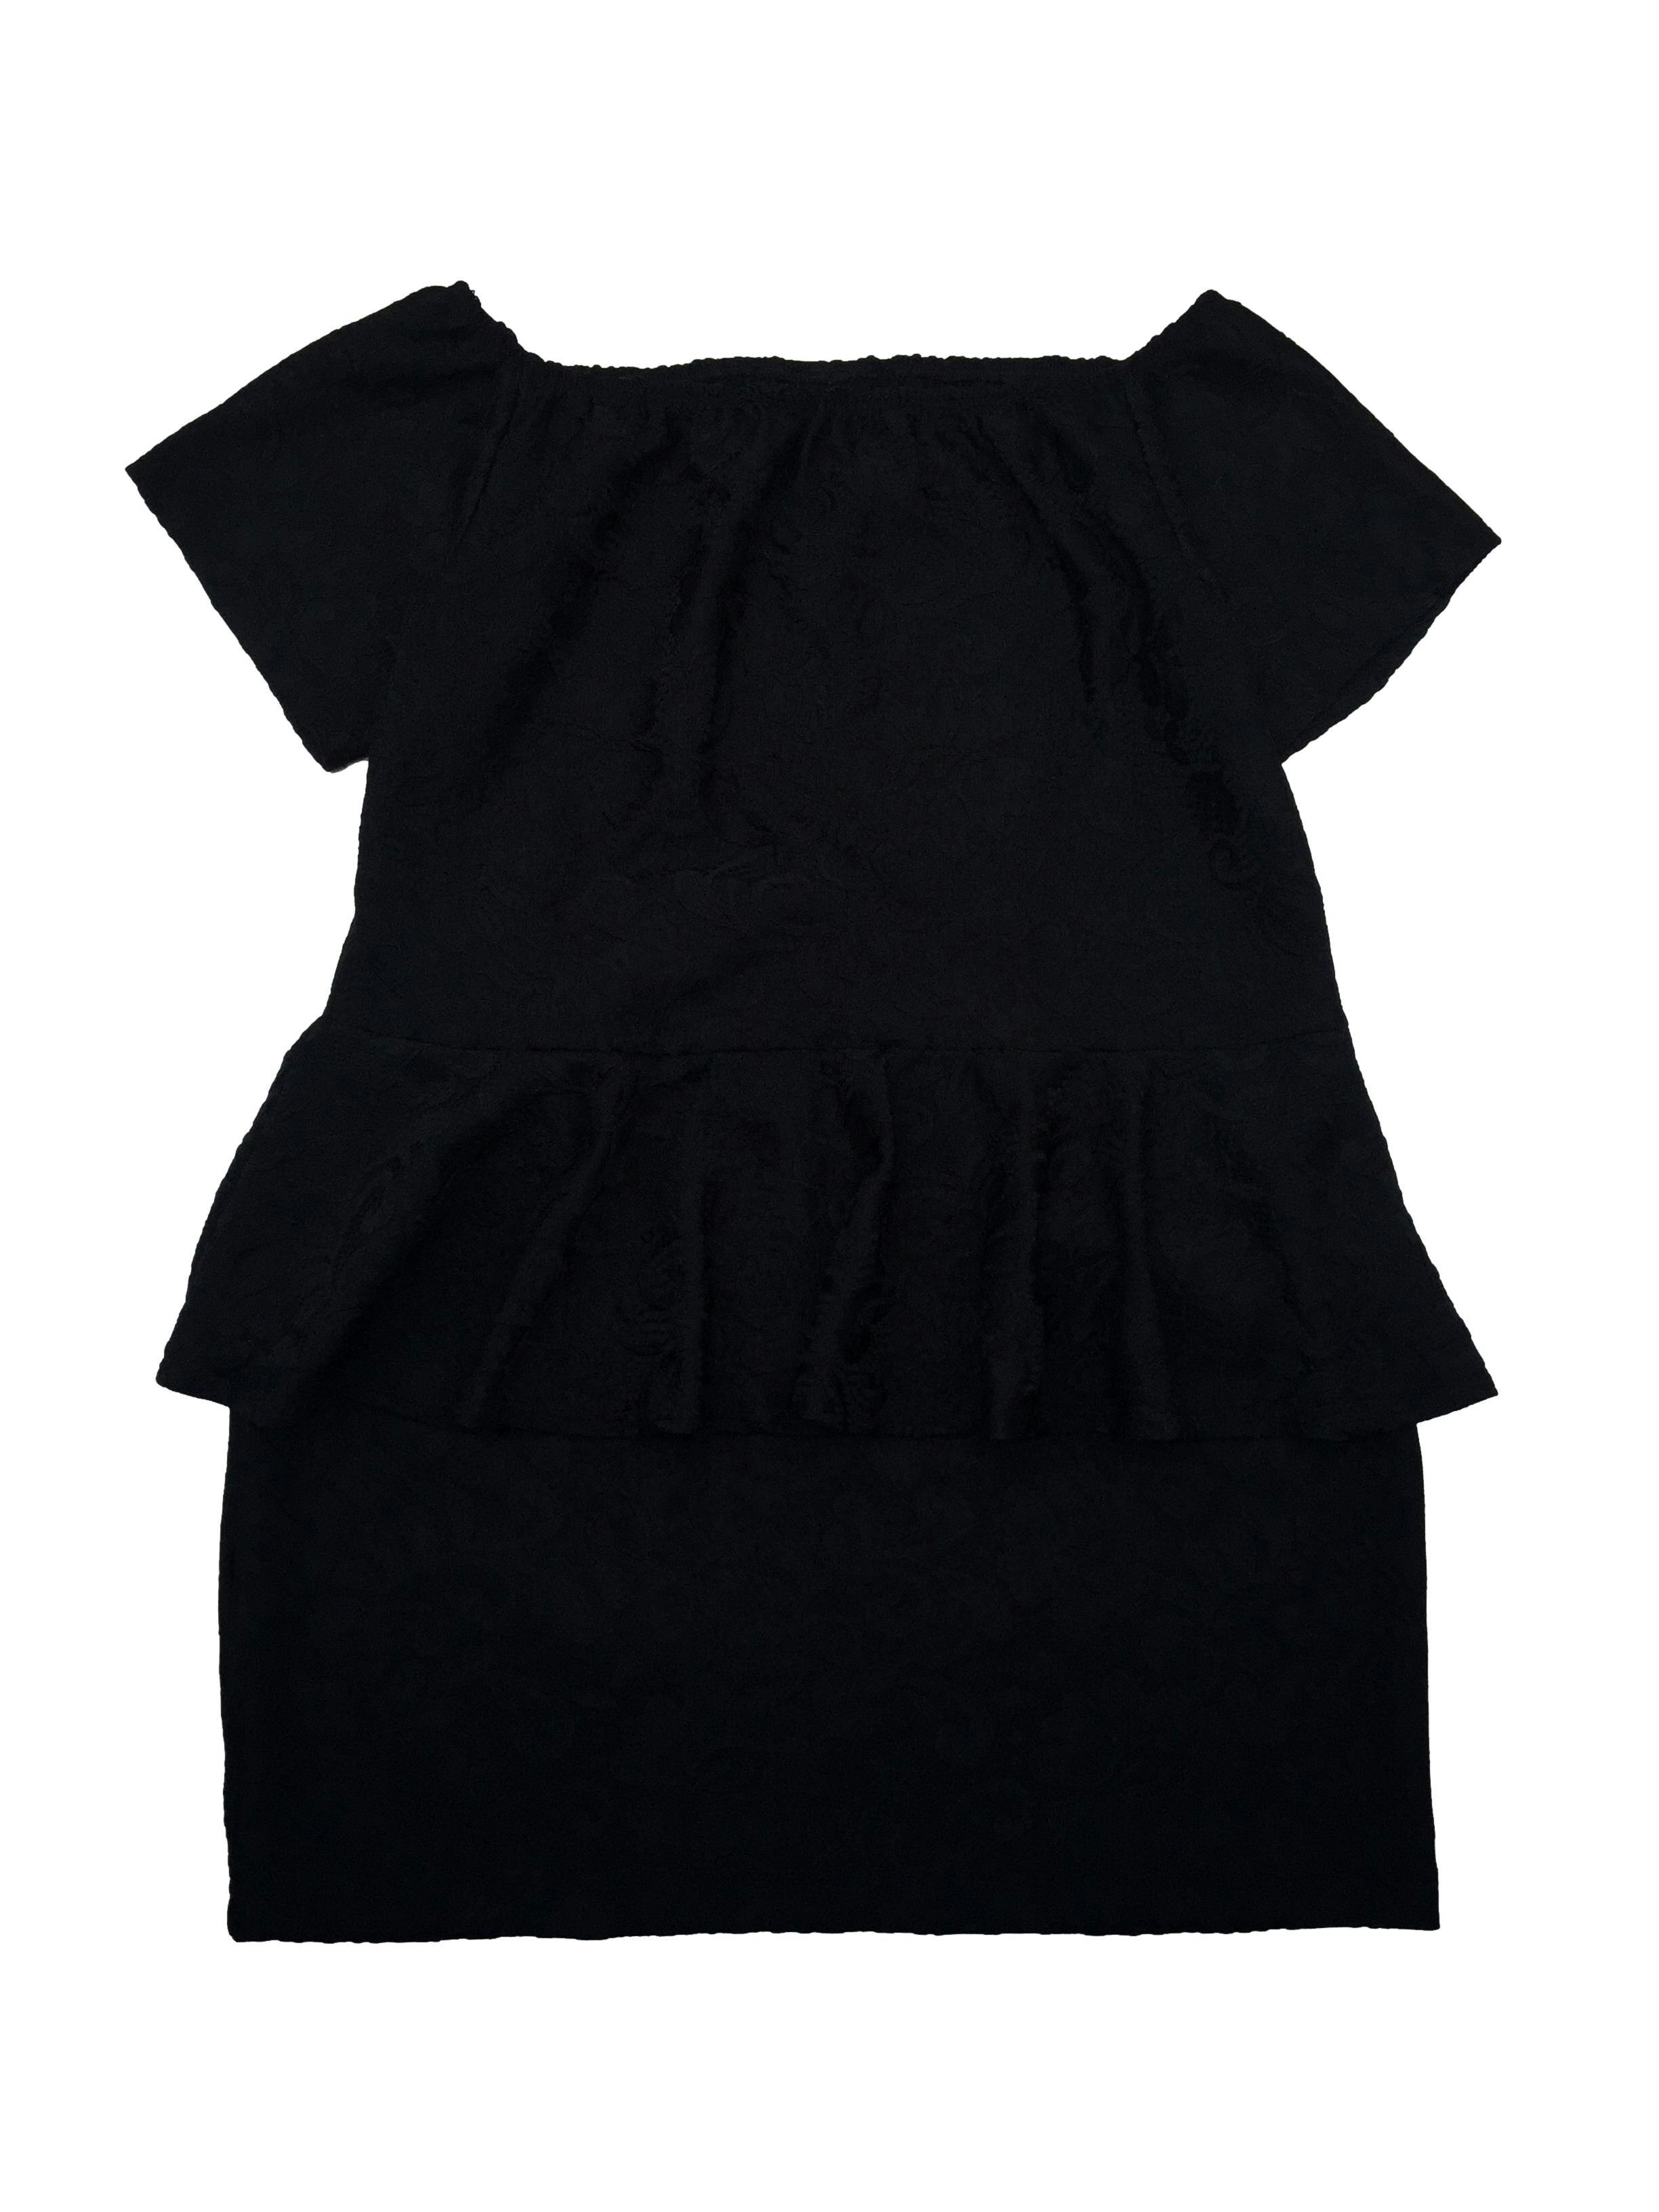 Vestido Stefany Ormeño de encaje negro offshoulder, corte peplum, tela ligeramete stretch. Busto: 104cm,  Cintura: 95cm, Largo: 80cm